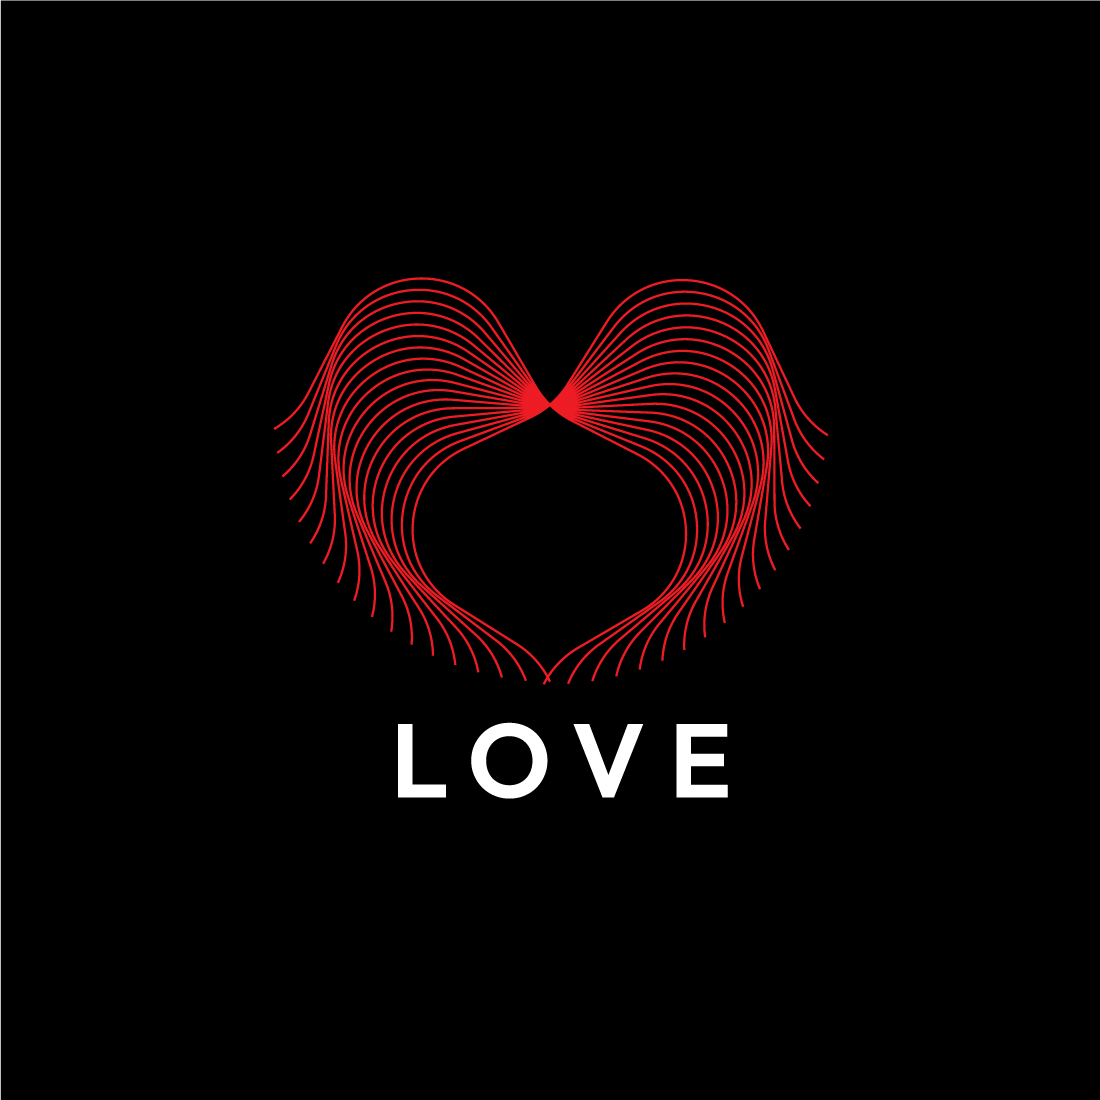 Elegant Line Art Heart & Love Logo Design Bundle preview image.